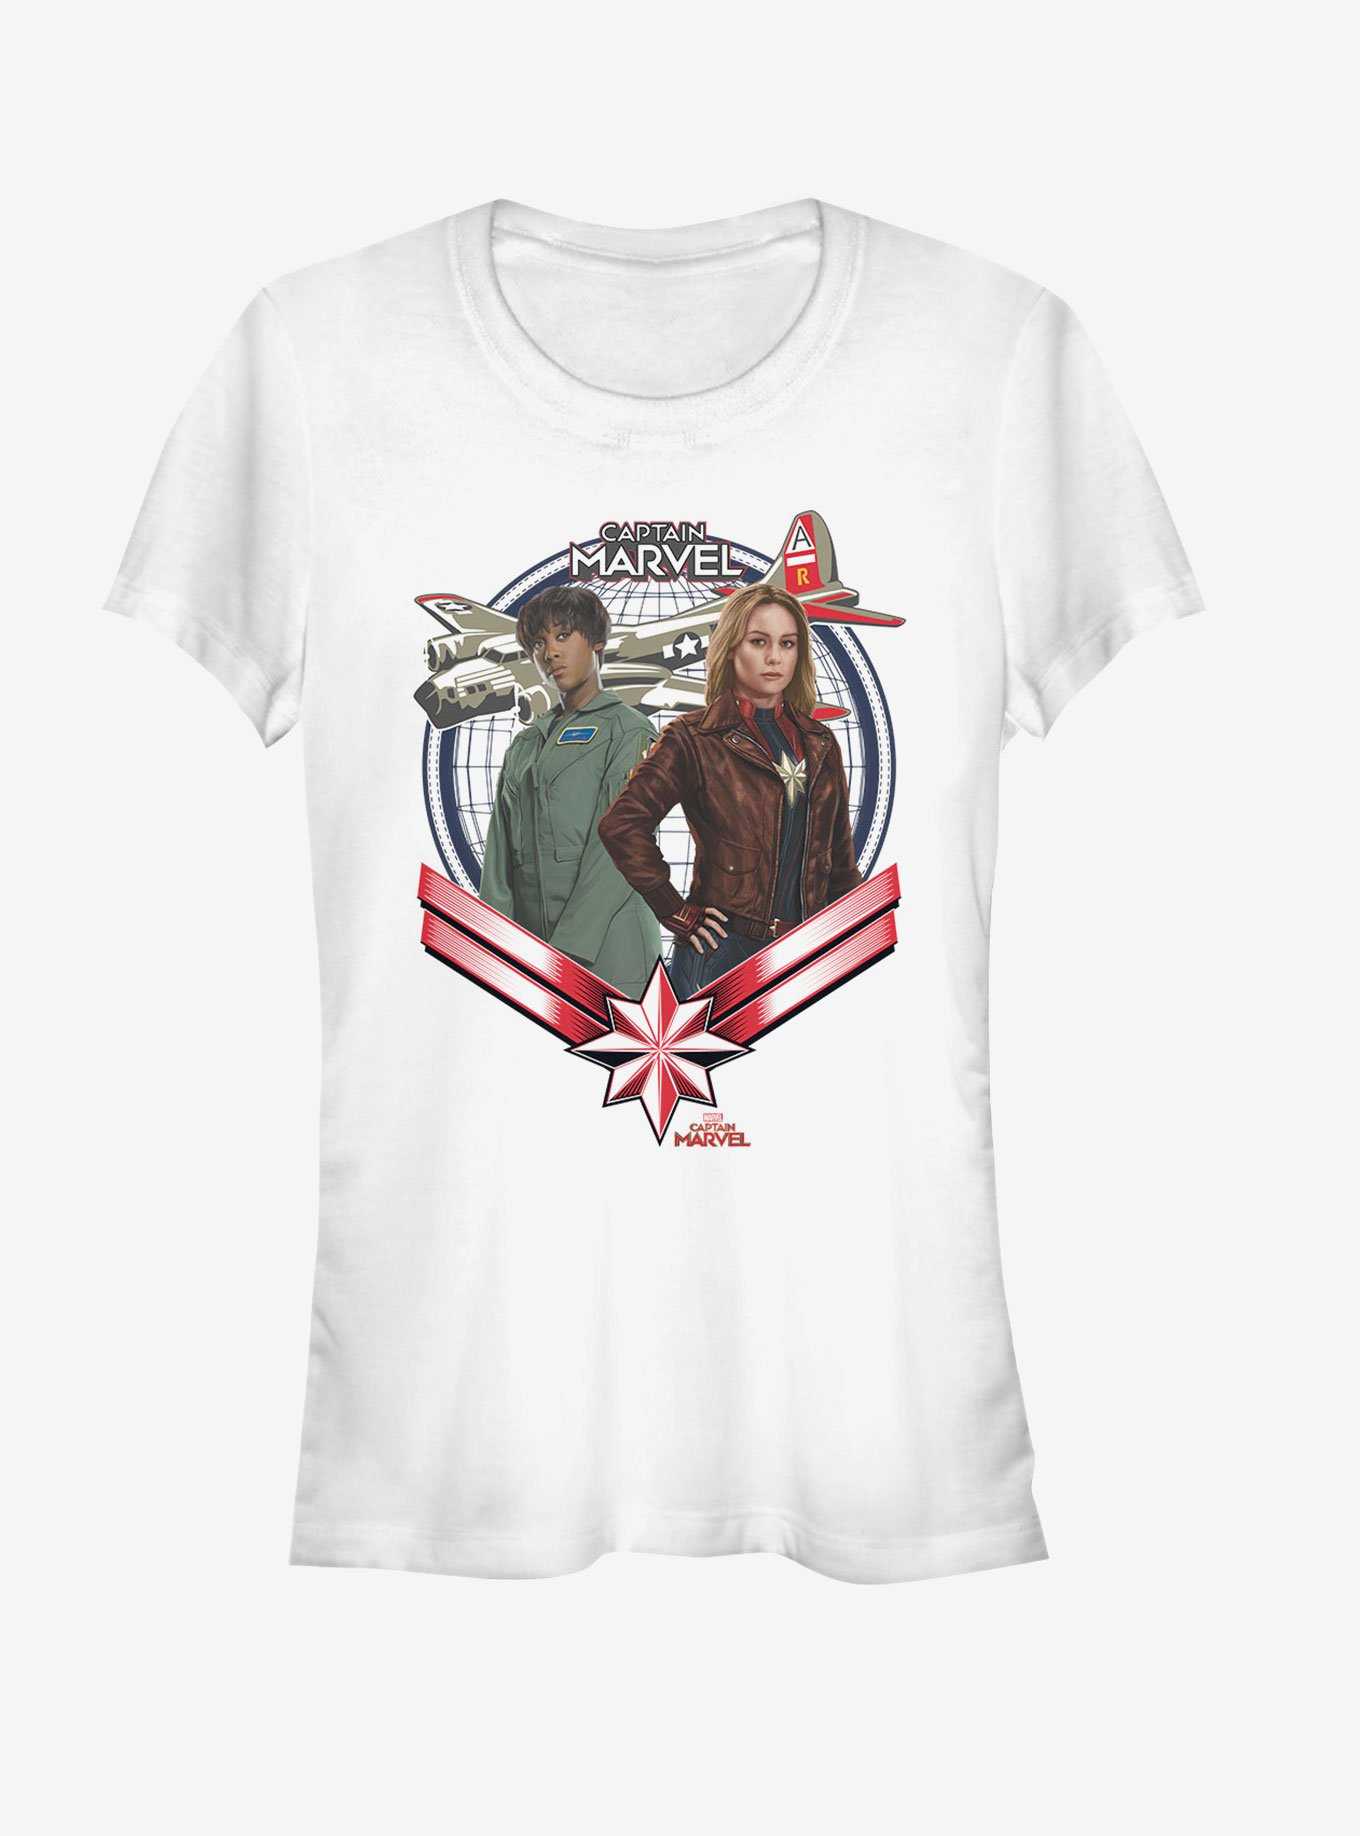 Marvel Captain Marvel Two Gunners Girls T-Shirt, , hi-res